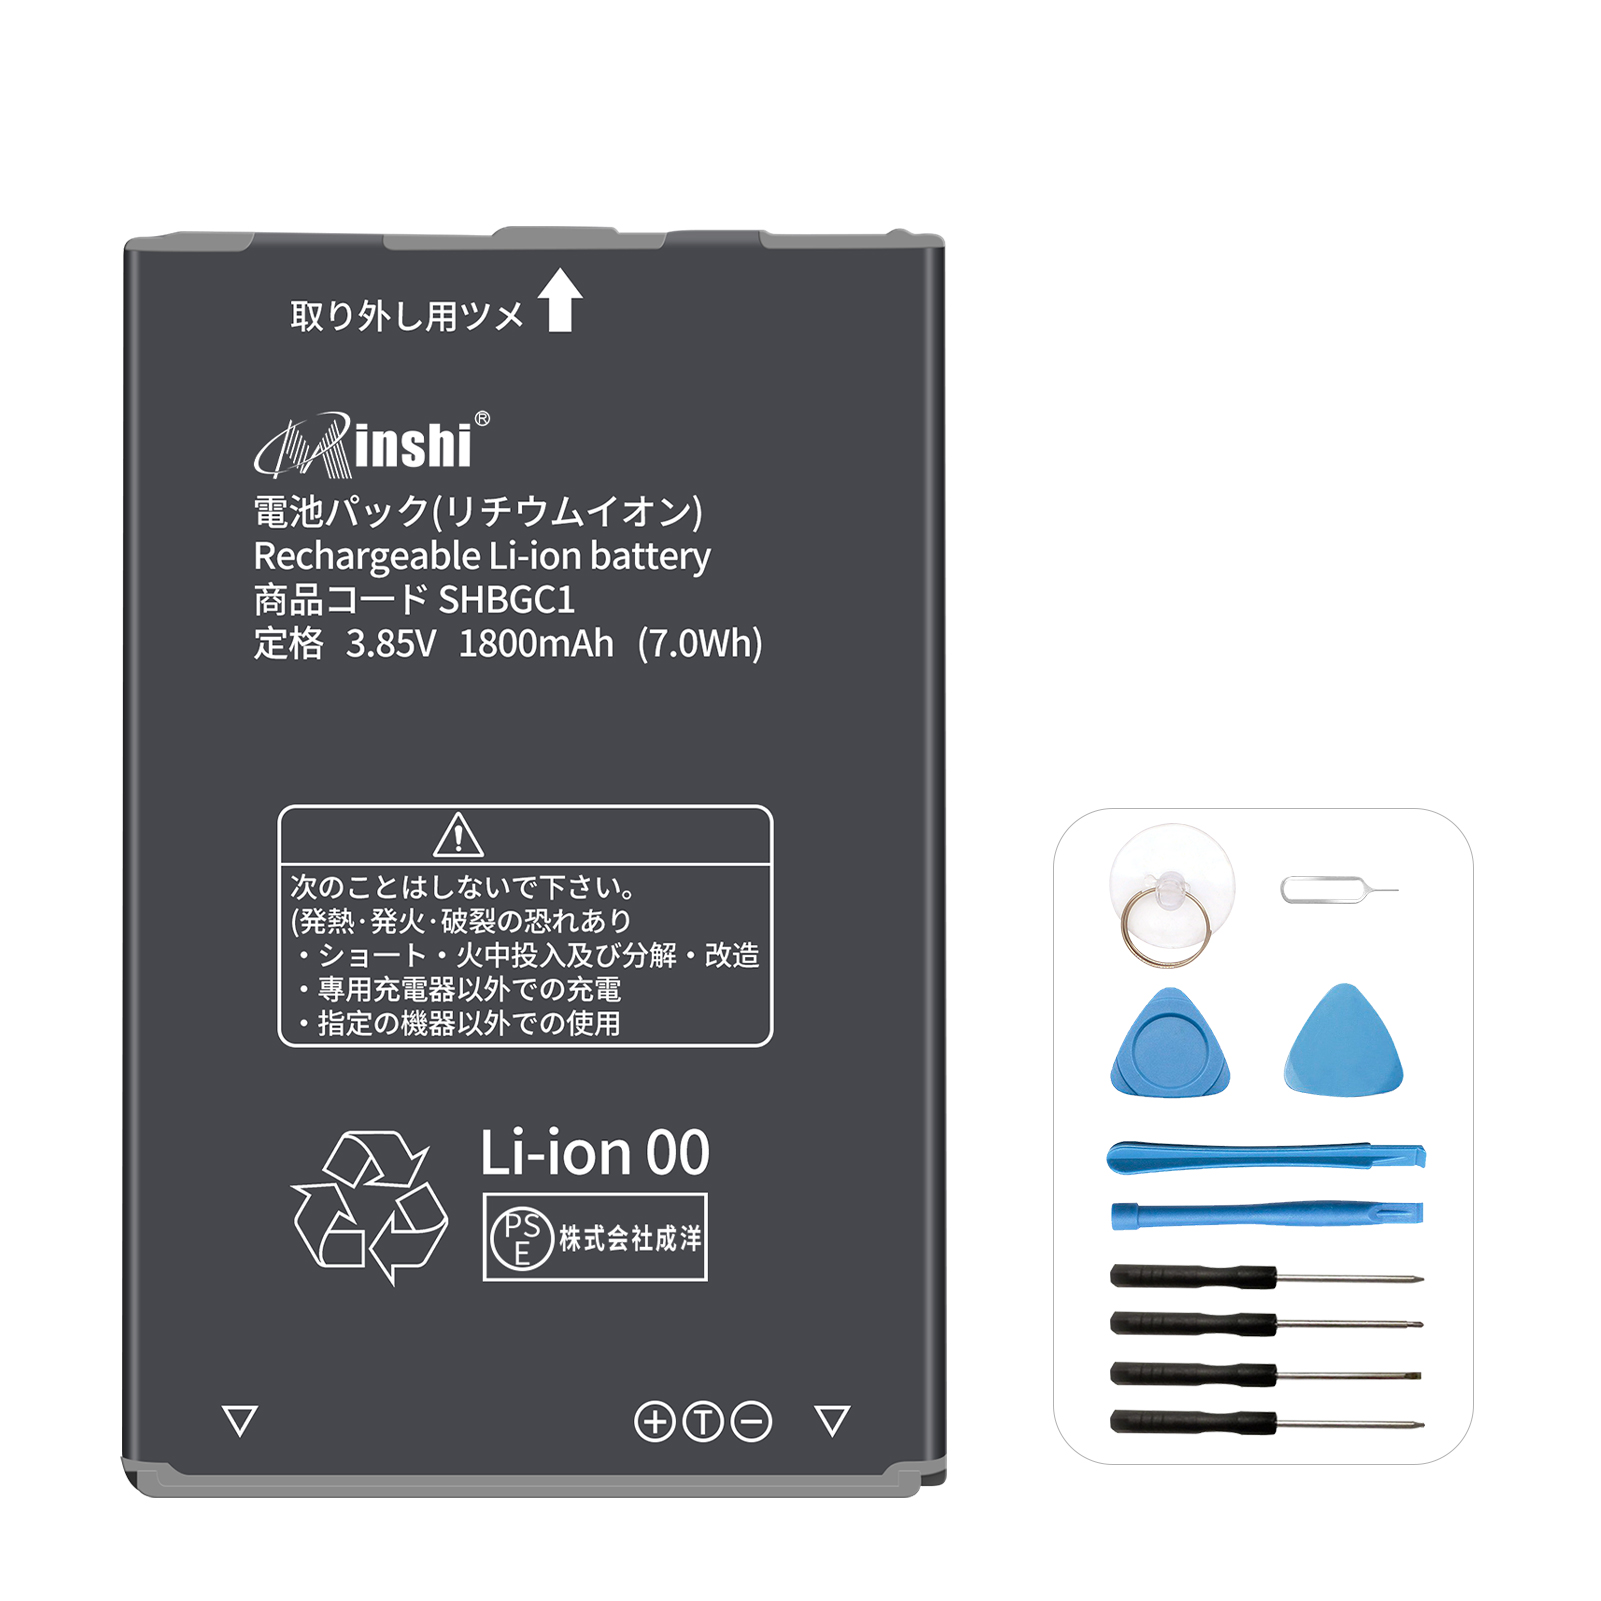 Amazon.co.jp: iPhone 充電 ライトニングケーブル 1M 3本セット Lightning ケーブル アイフォン 急速充電  高耐久編組ナイロン 充電コード USB同期 高速データ転送 断線防止 iPad iPod AirPods 多種対応 : パソコン・周辺機器